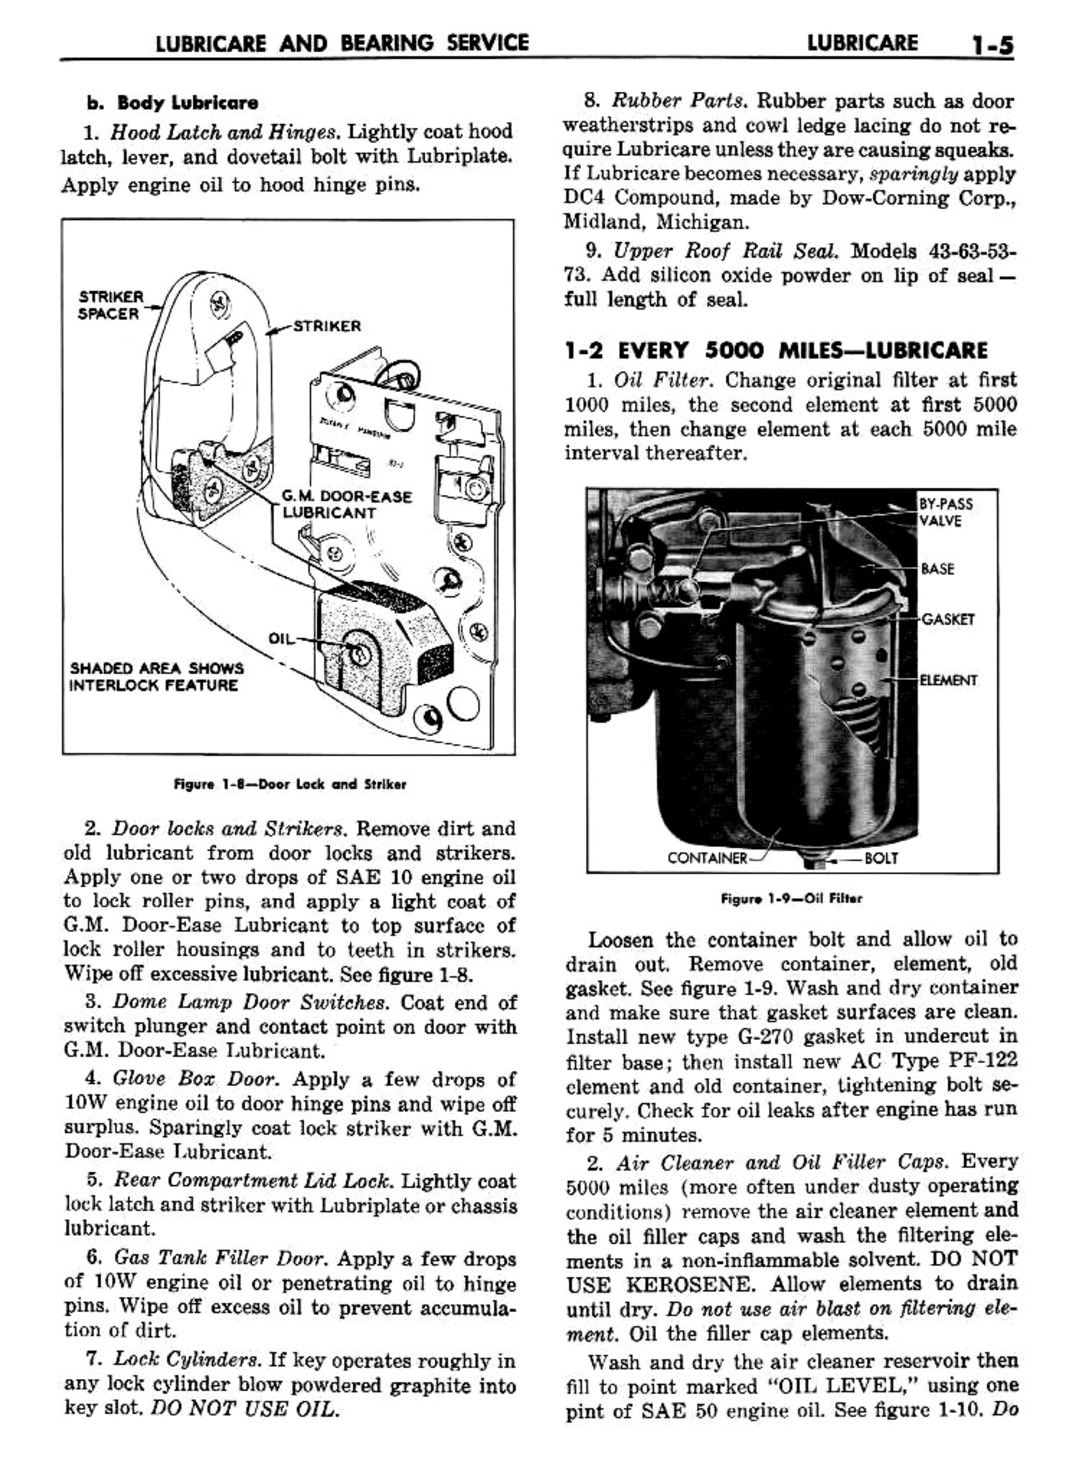 n_02 1957 Buick Shop Manual - Lubricare-005-005.jpg